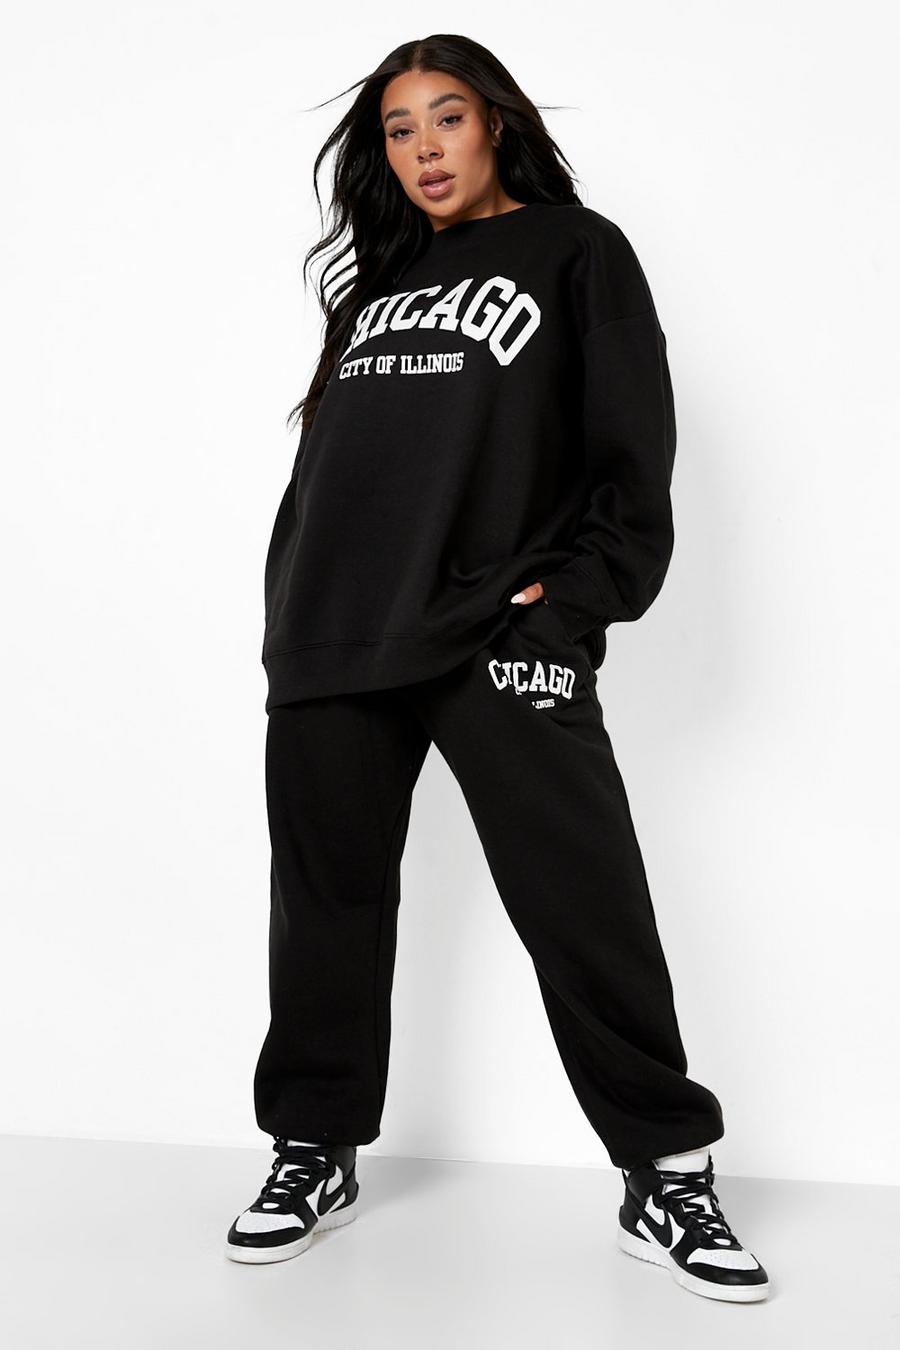 שחור black מכנסי ריצה אוברסייז עם כיתוב Chicago, מידות גדולות